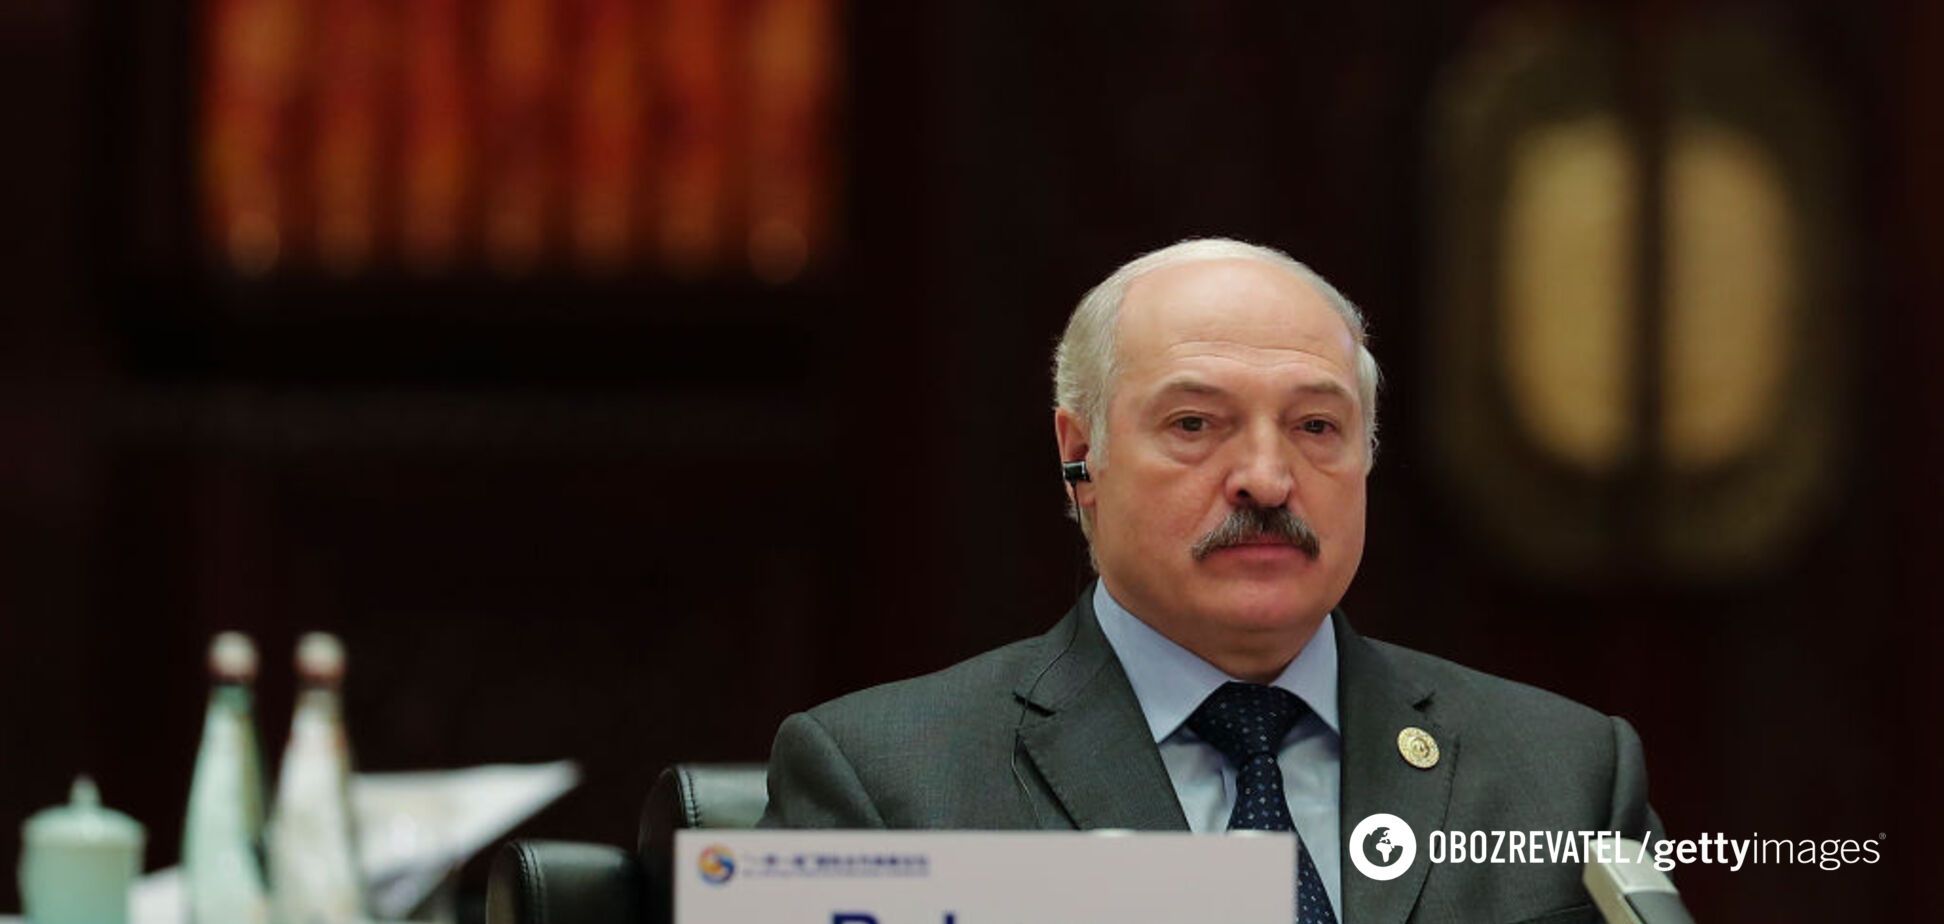 Александр Лукашенко попал под санкции 